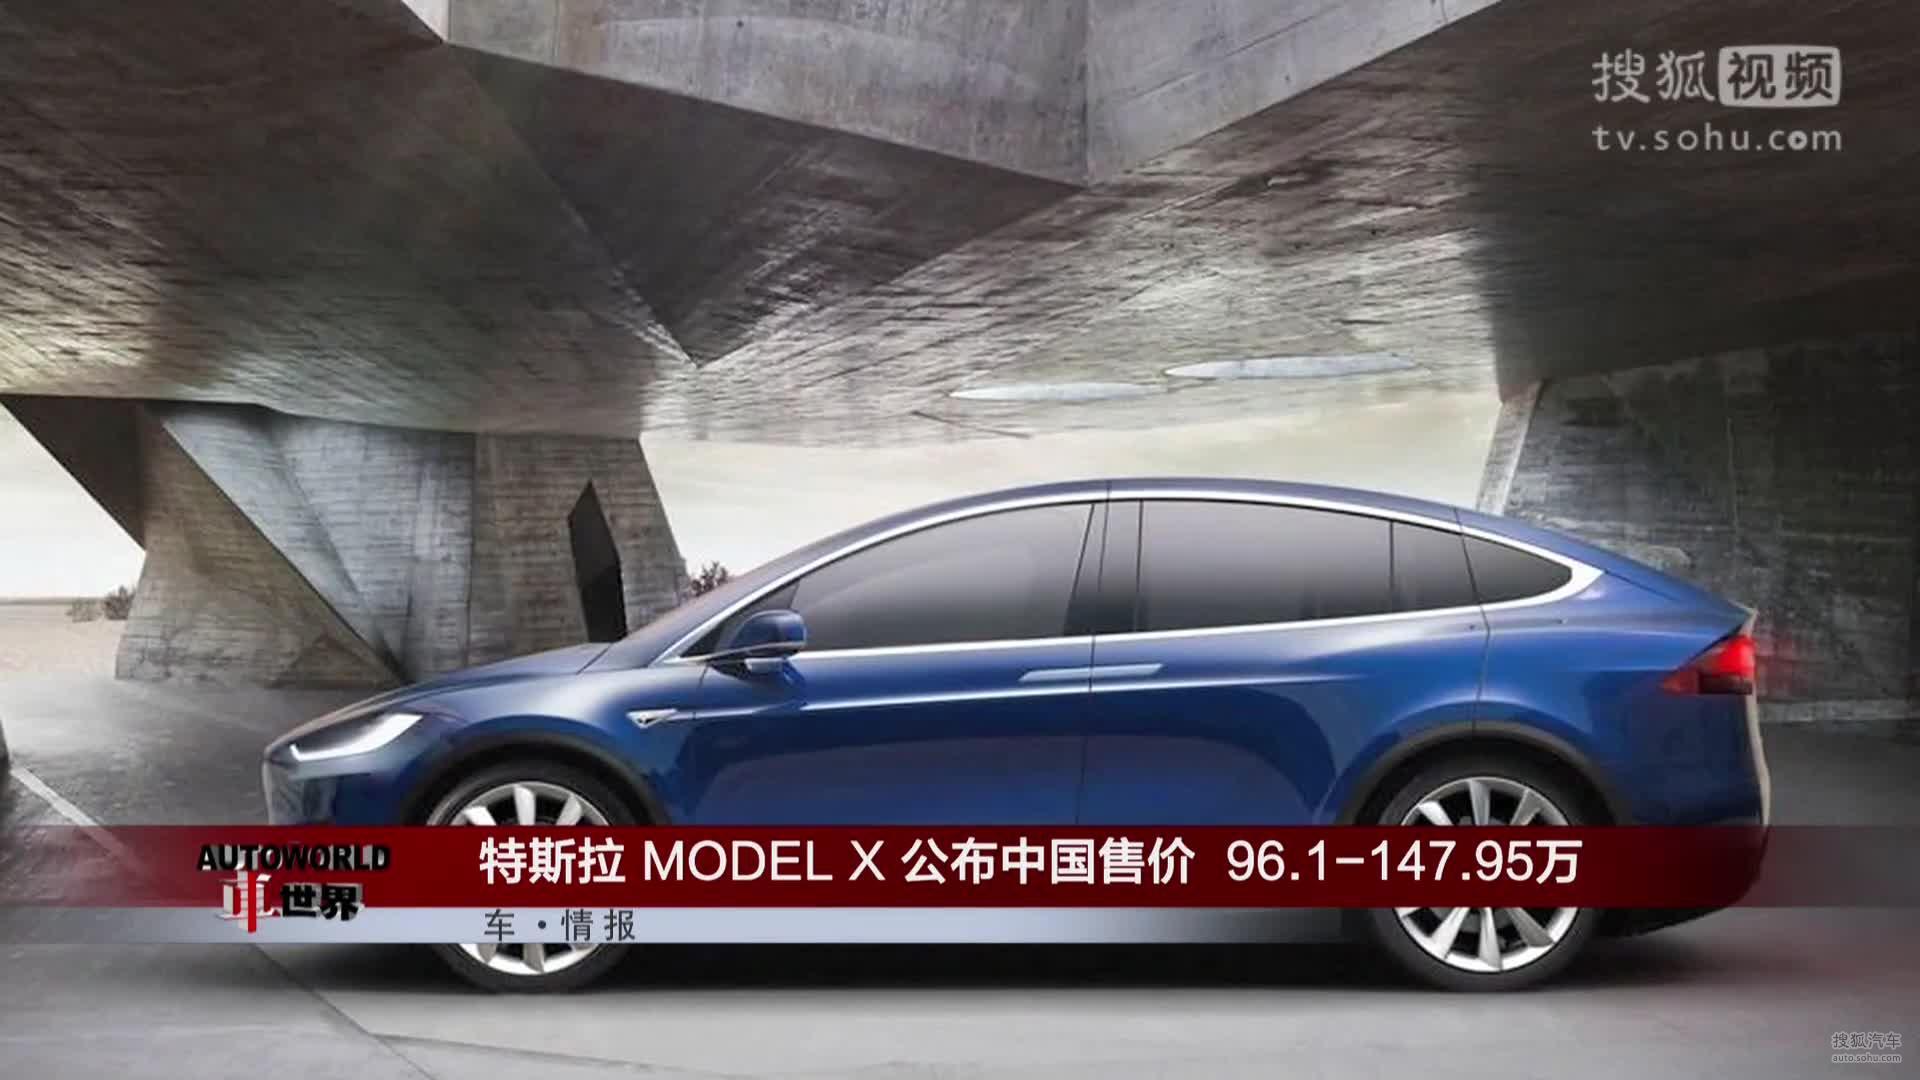 特斯拉MODEL X公布中国售价 96.1-147.95万